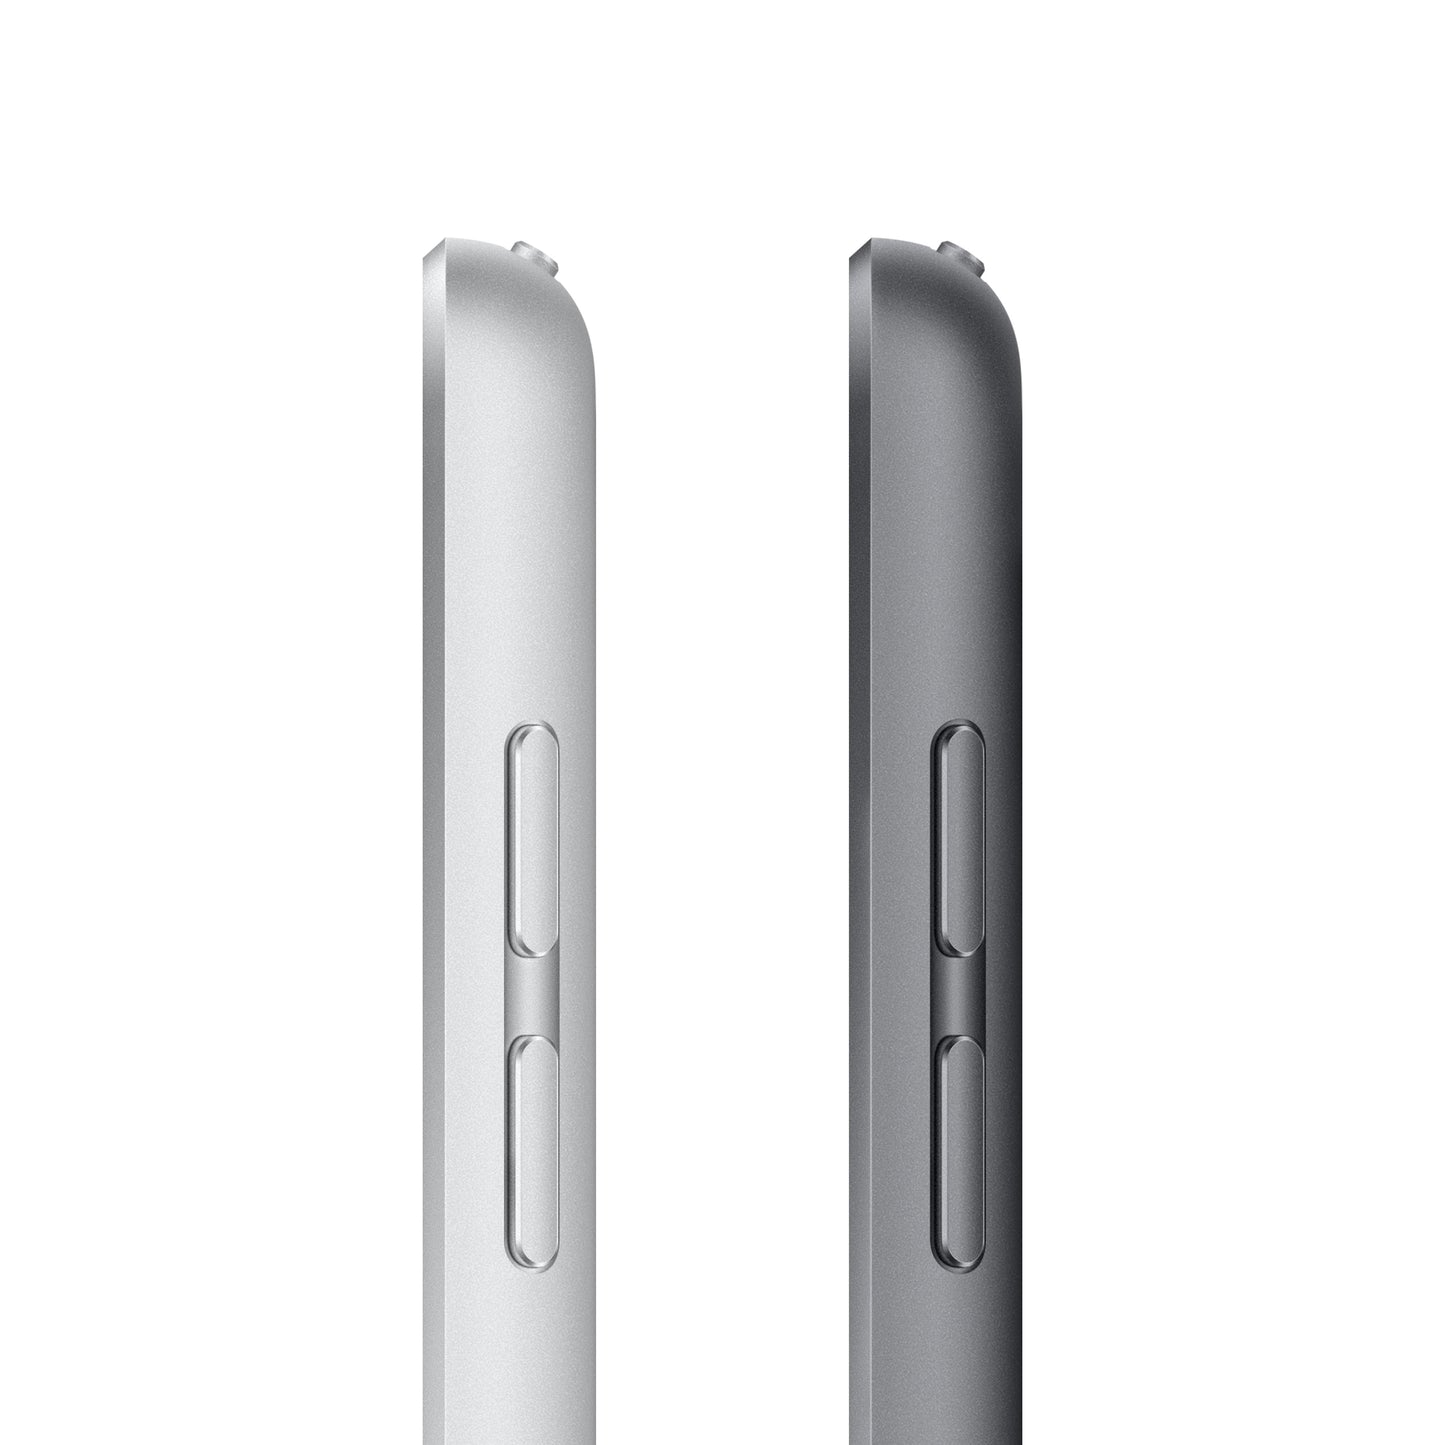 2021 10.2-inch iPad Wi-Fi 256GB - Space Grey (9th generation)